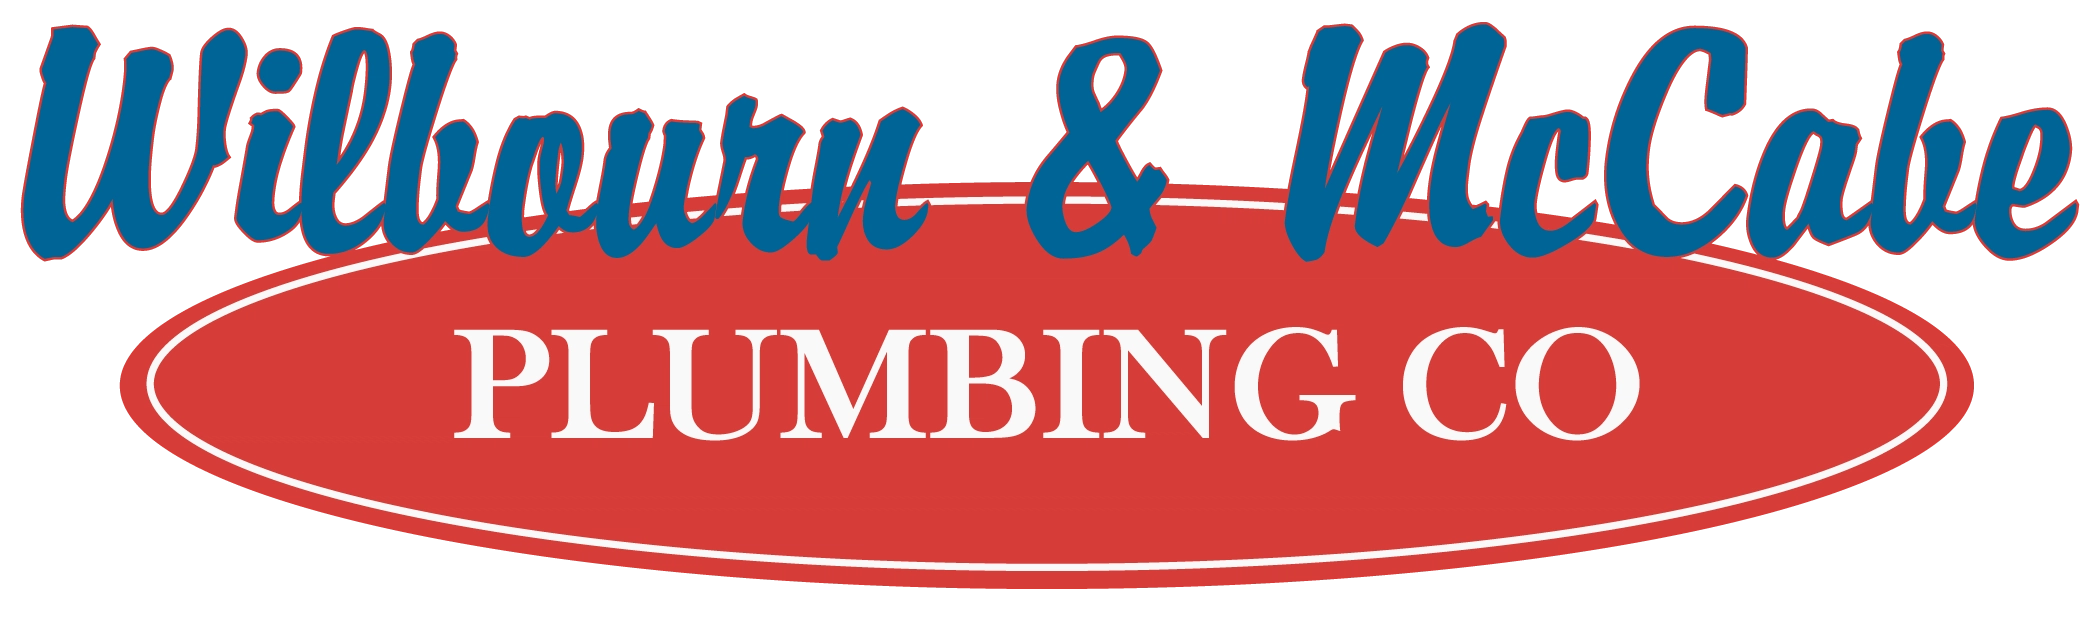 Wilbourn & McCabe Plumbing Logo